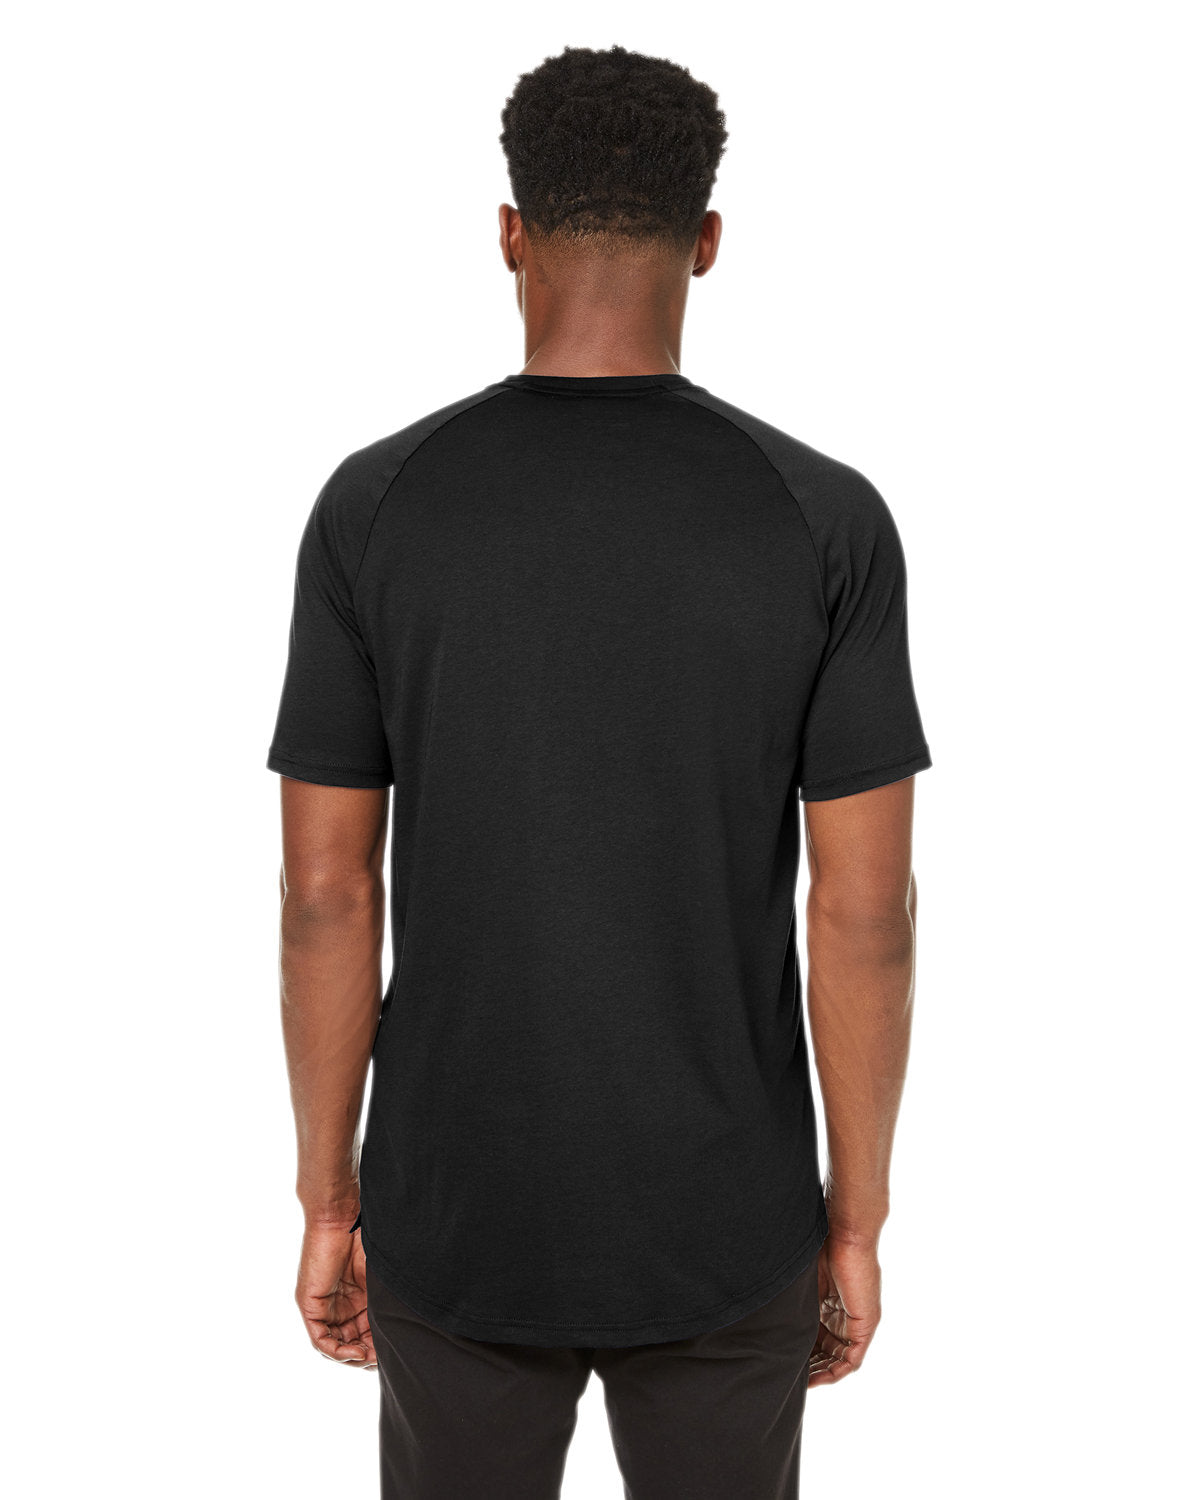 Under Armour Unisex Athletics Customized T-Shirts, Black